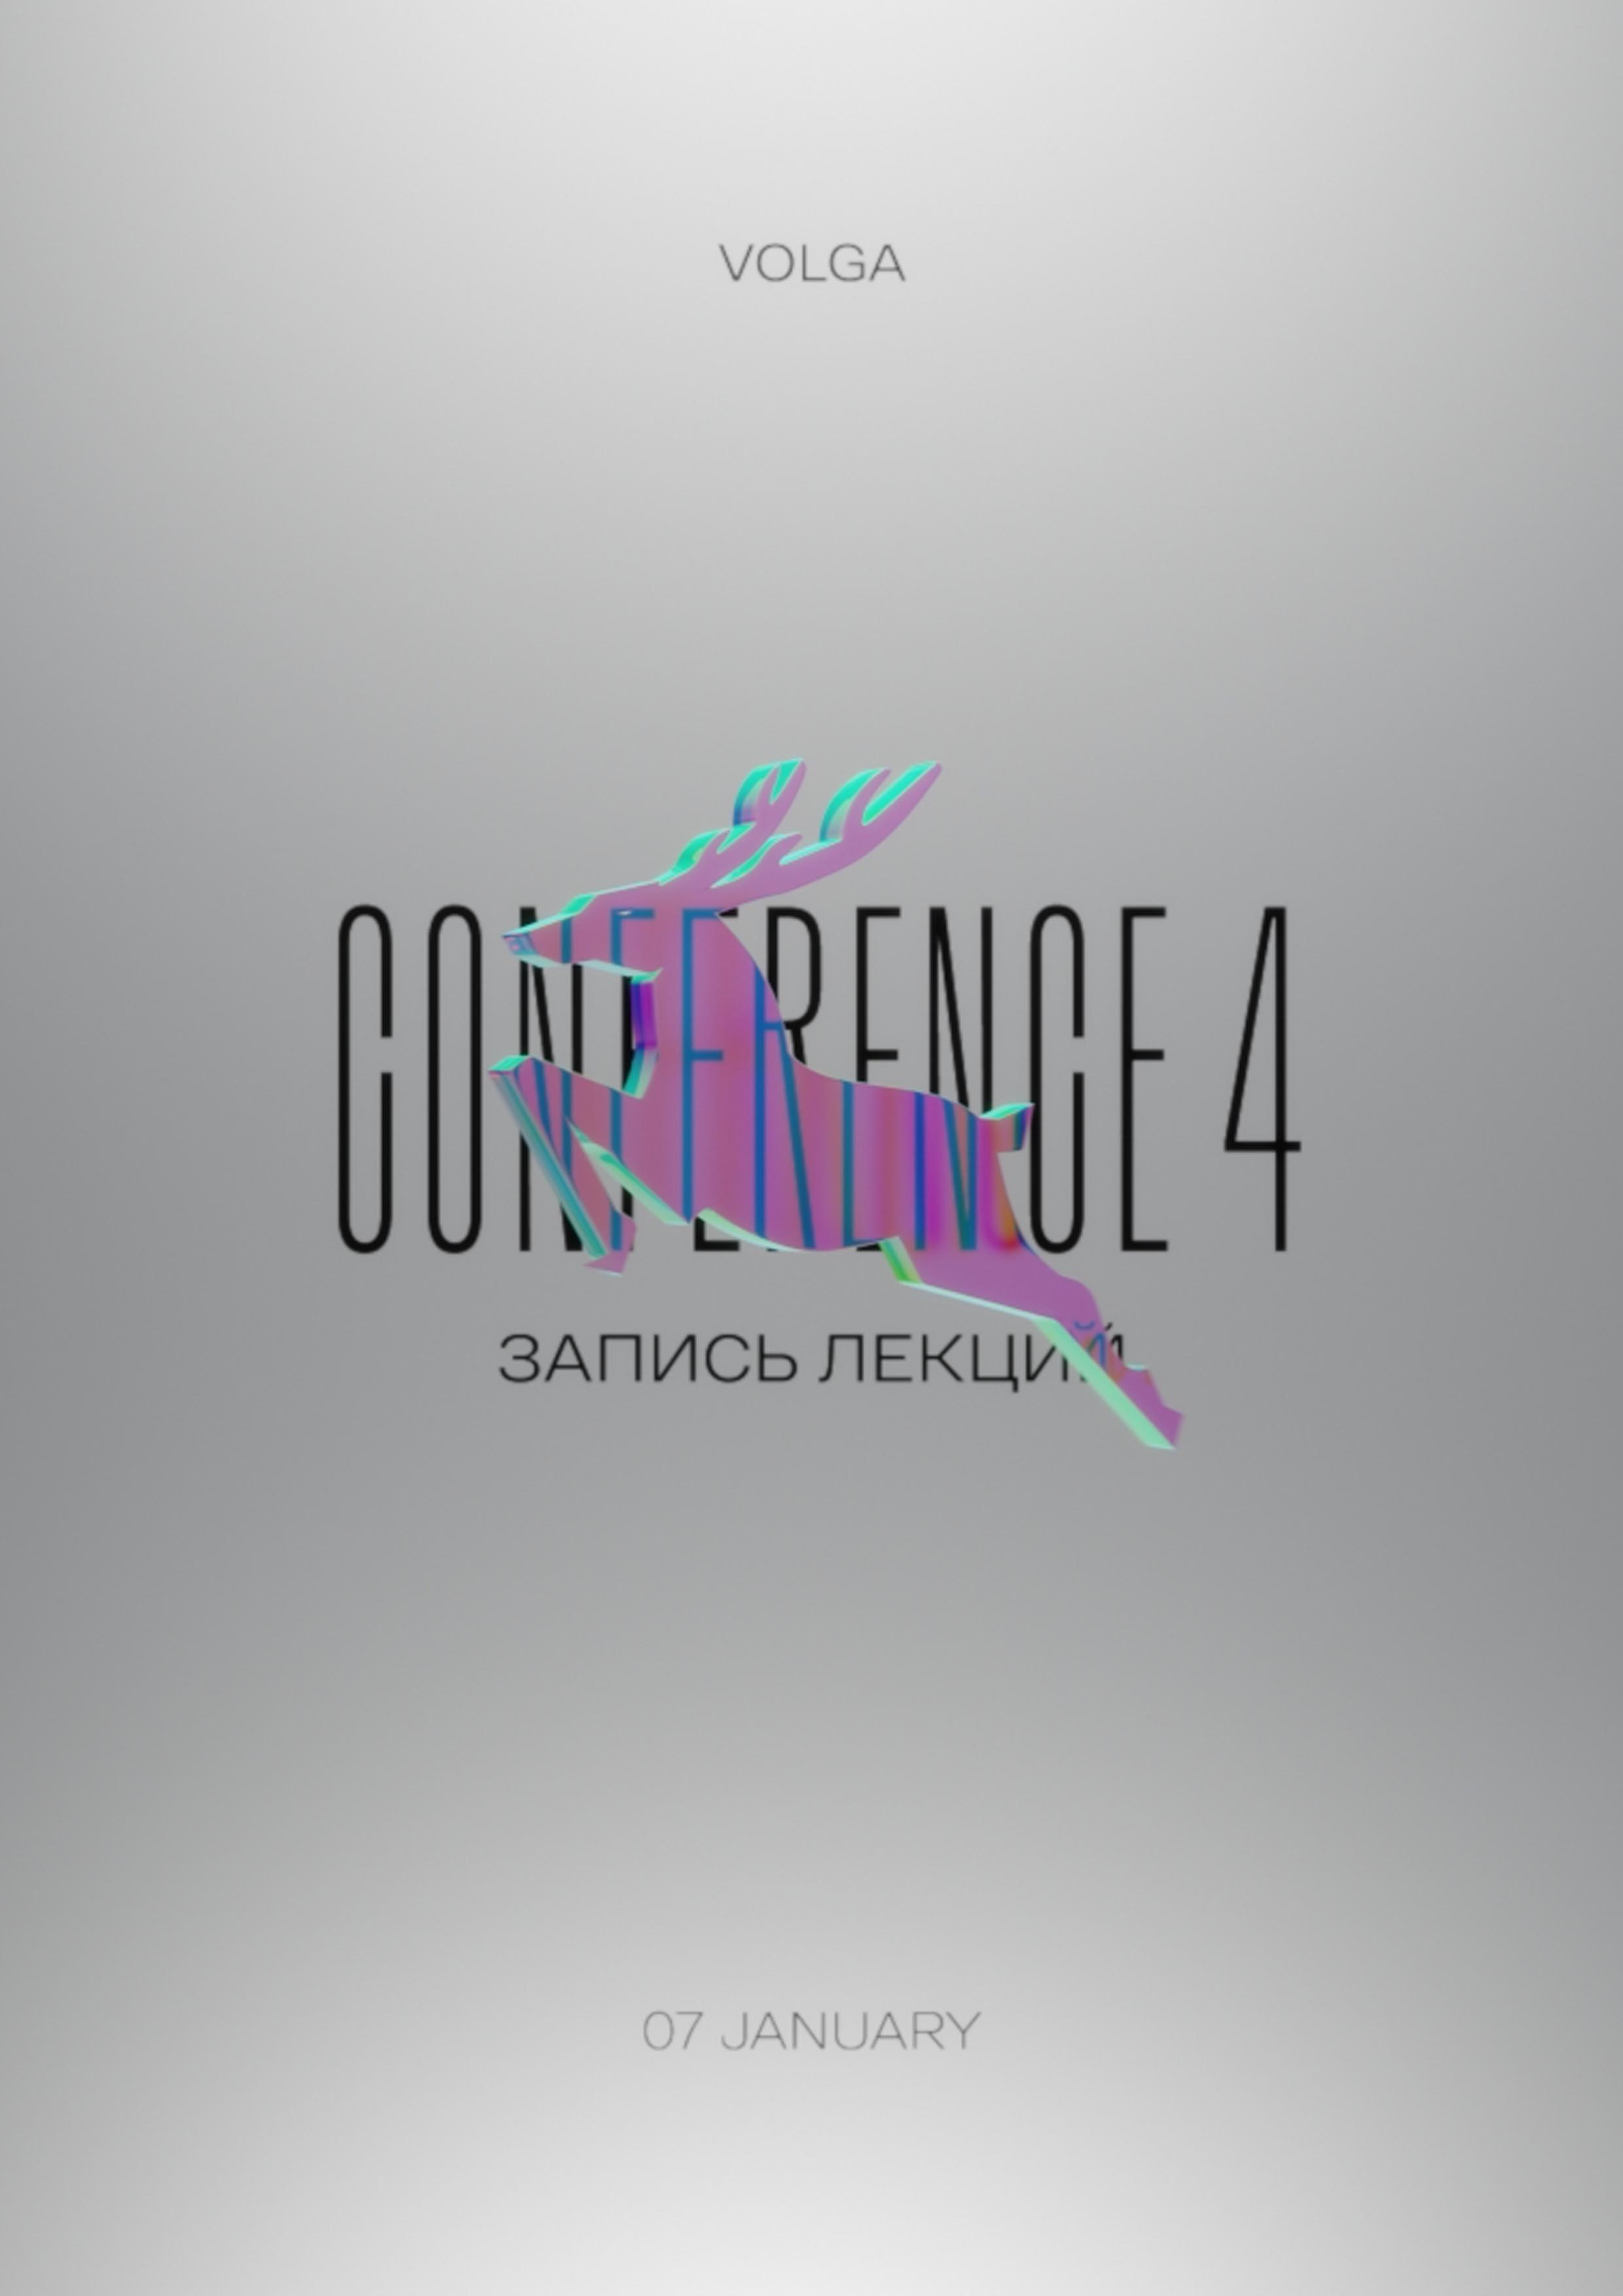 Запись лекций Conference 4